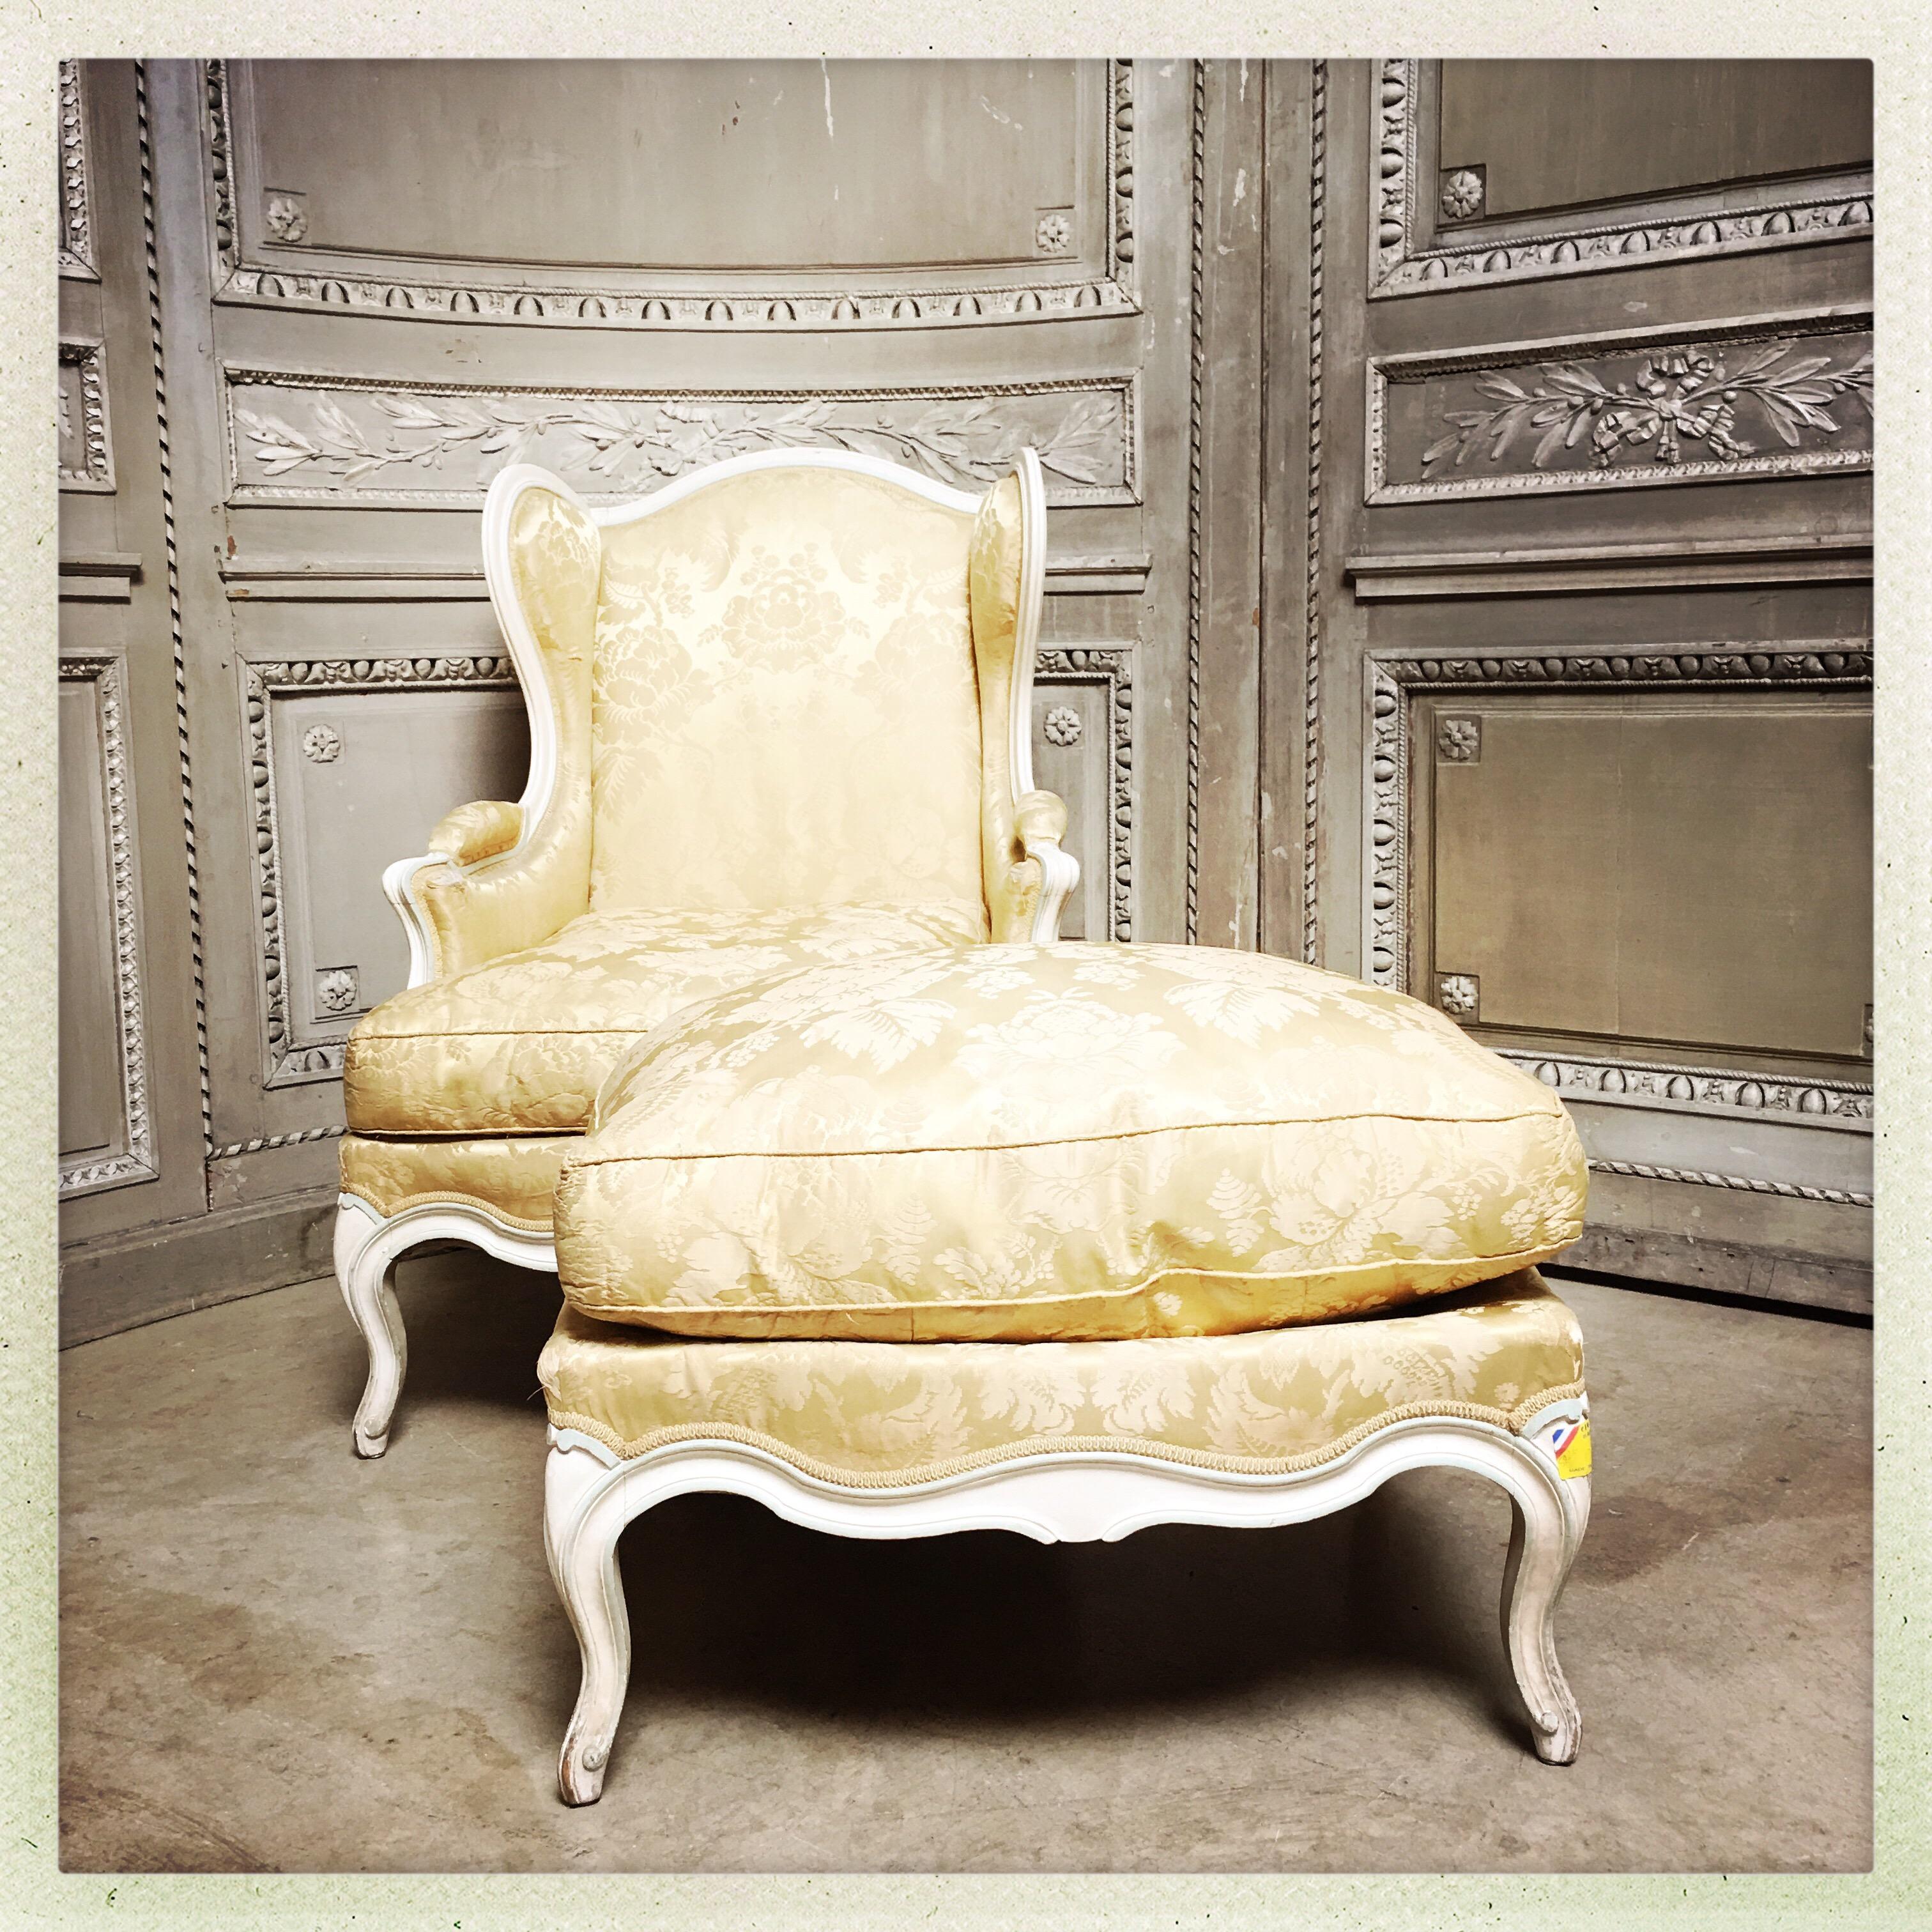 Ein französisches geflügeltes Bett im Stil von Louis XV mit einer passenden Ottomane, alle mit einer charmanten Lackierung in Creme und Hellblau.